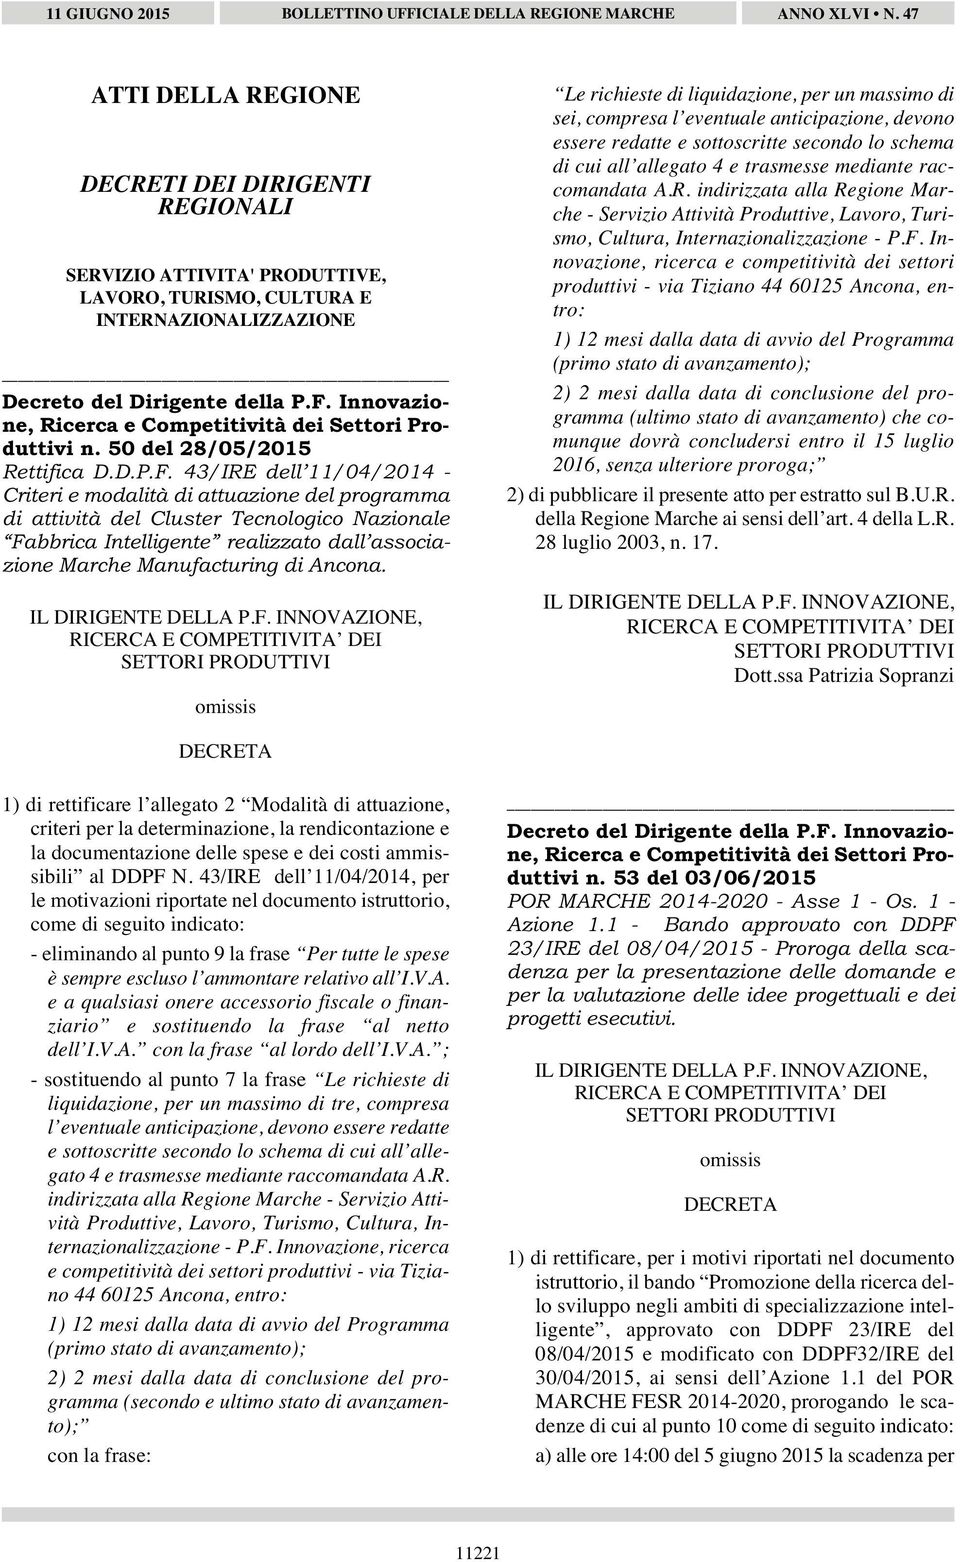 43/IRE dell 11/04/2014 - Criteri e modalità di attuazione del programma di attività del Cluster Tecnologico Nazionale Fabbrica Intelligente realizzato dall associazione Marche Manufacturing di Ancona.